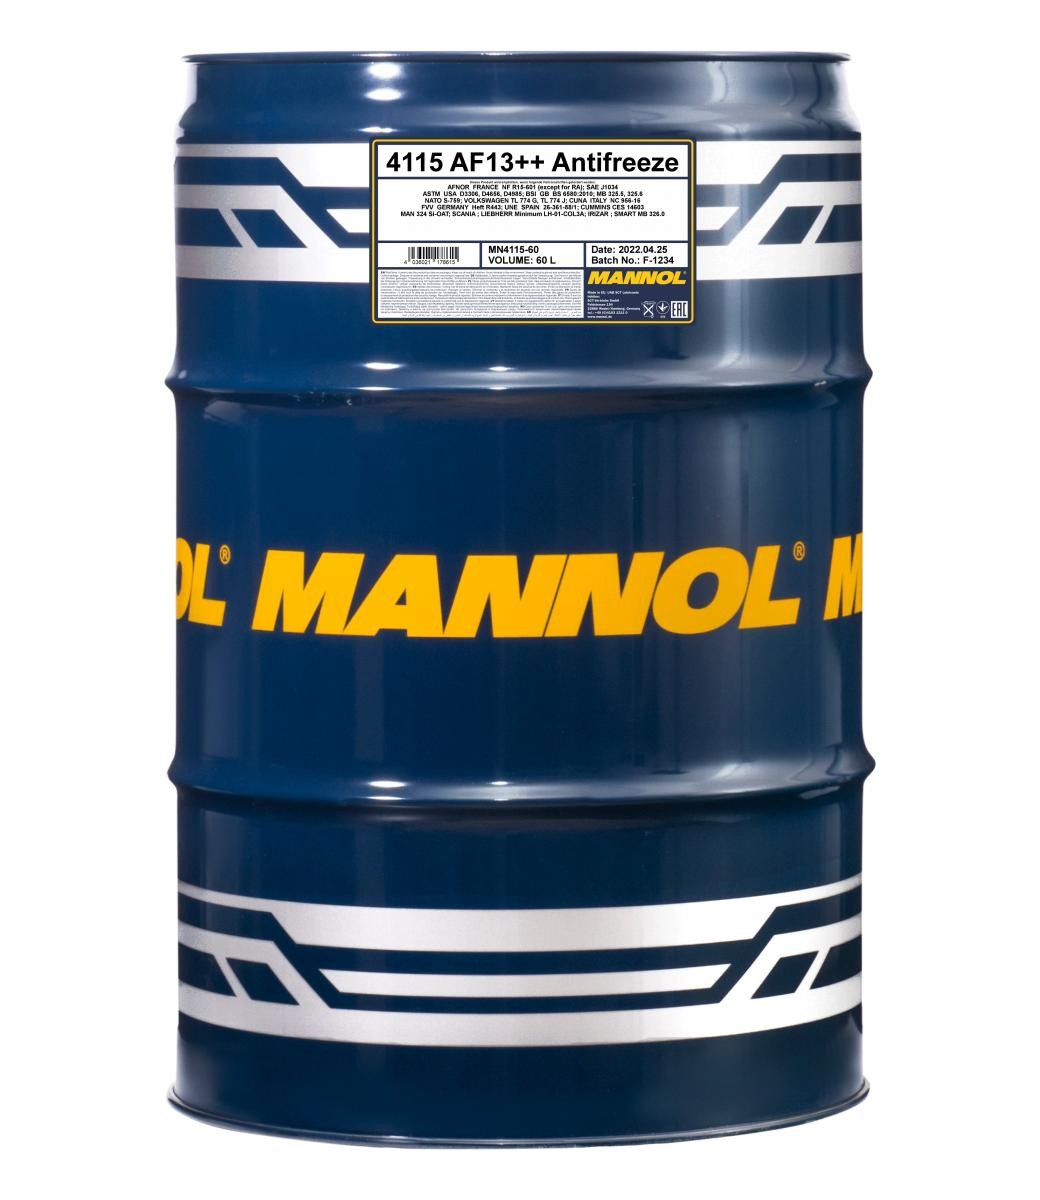 MANNOL AF13++, High-performance MN4115-60 Антифриз спецификация: G12